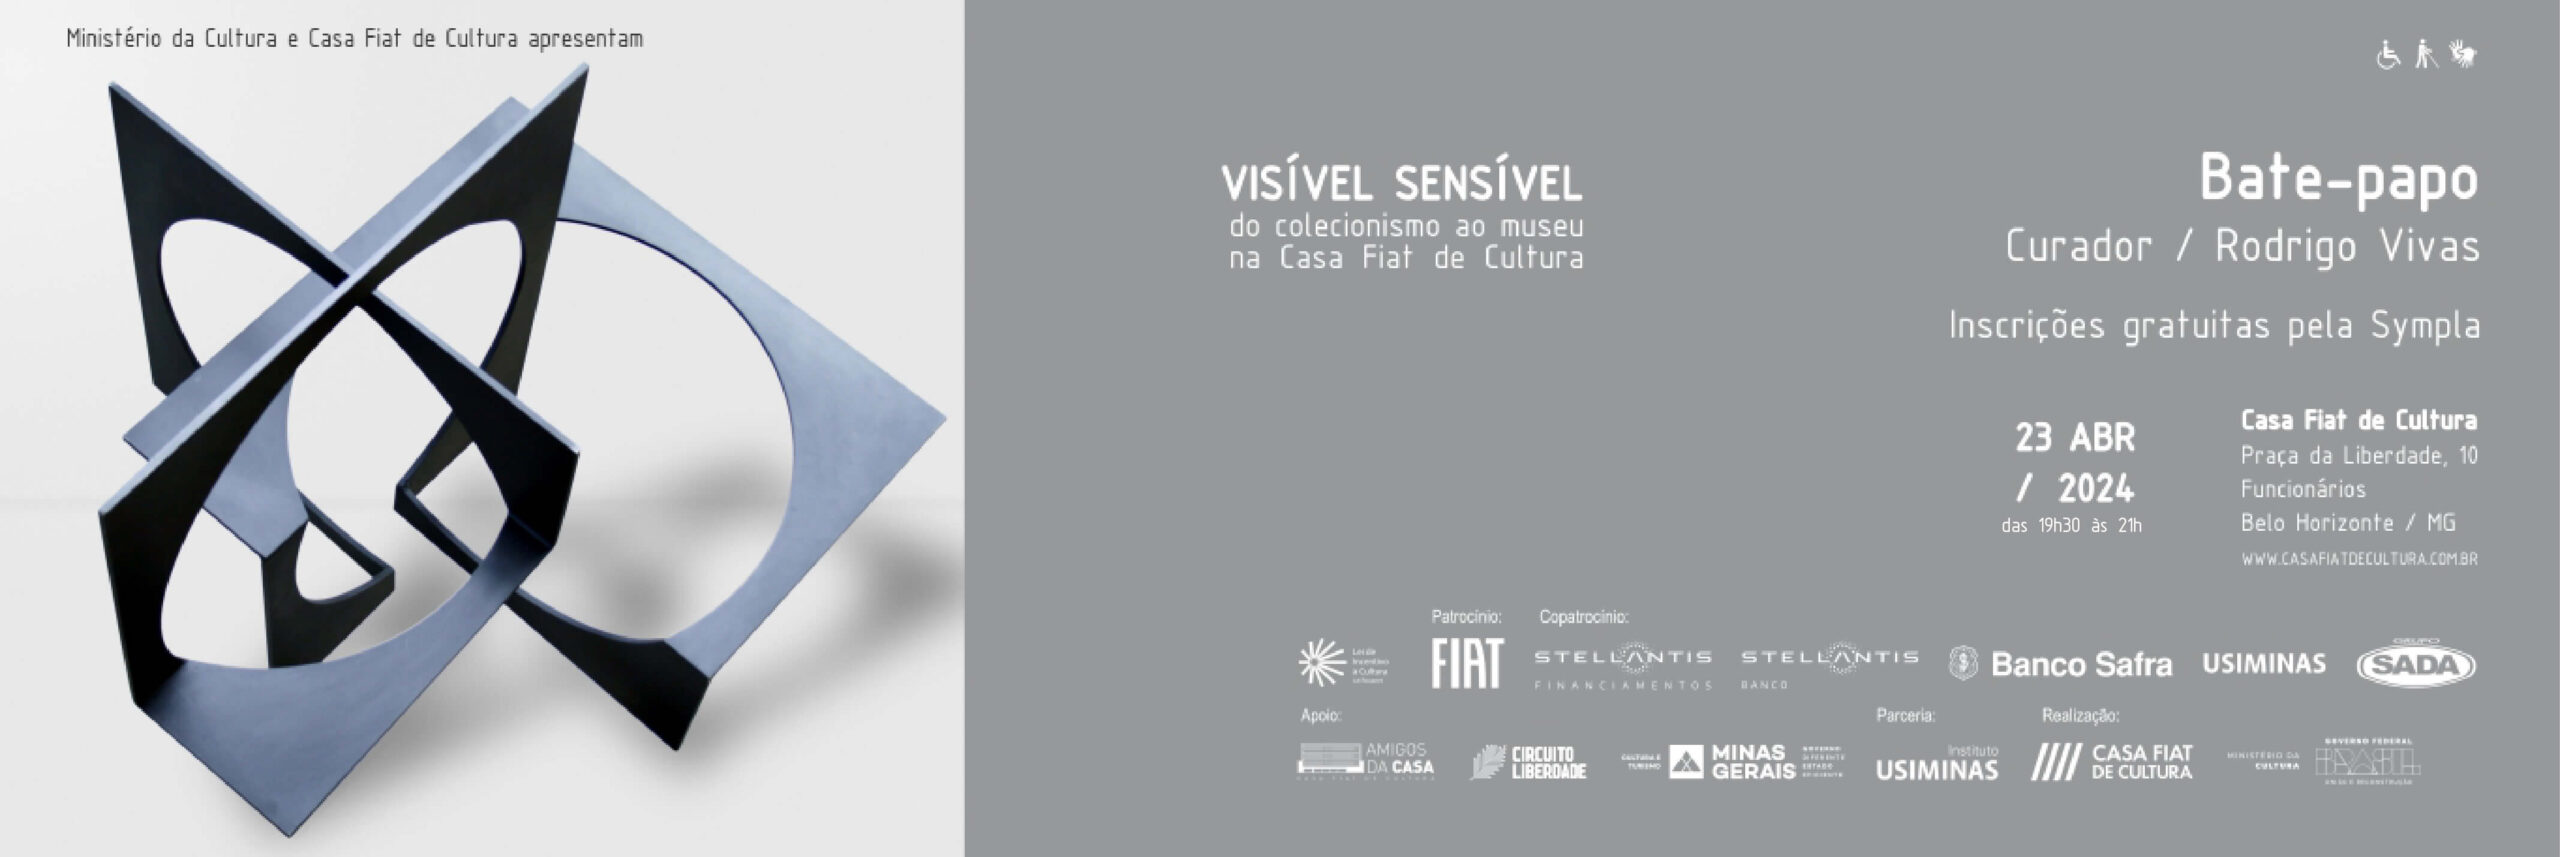 Abertura de exposição | Visível Sensível: do colecionismo ao museu na Casa Fiat de Cultura